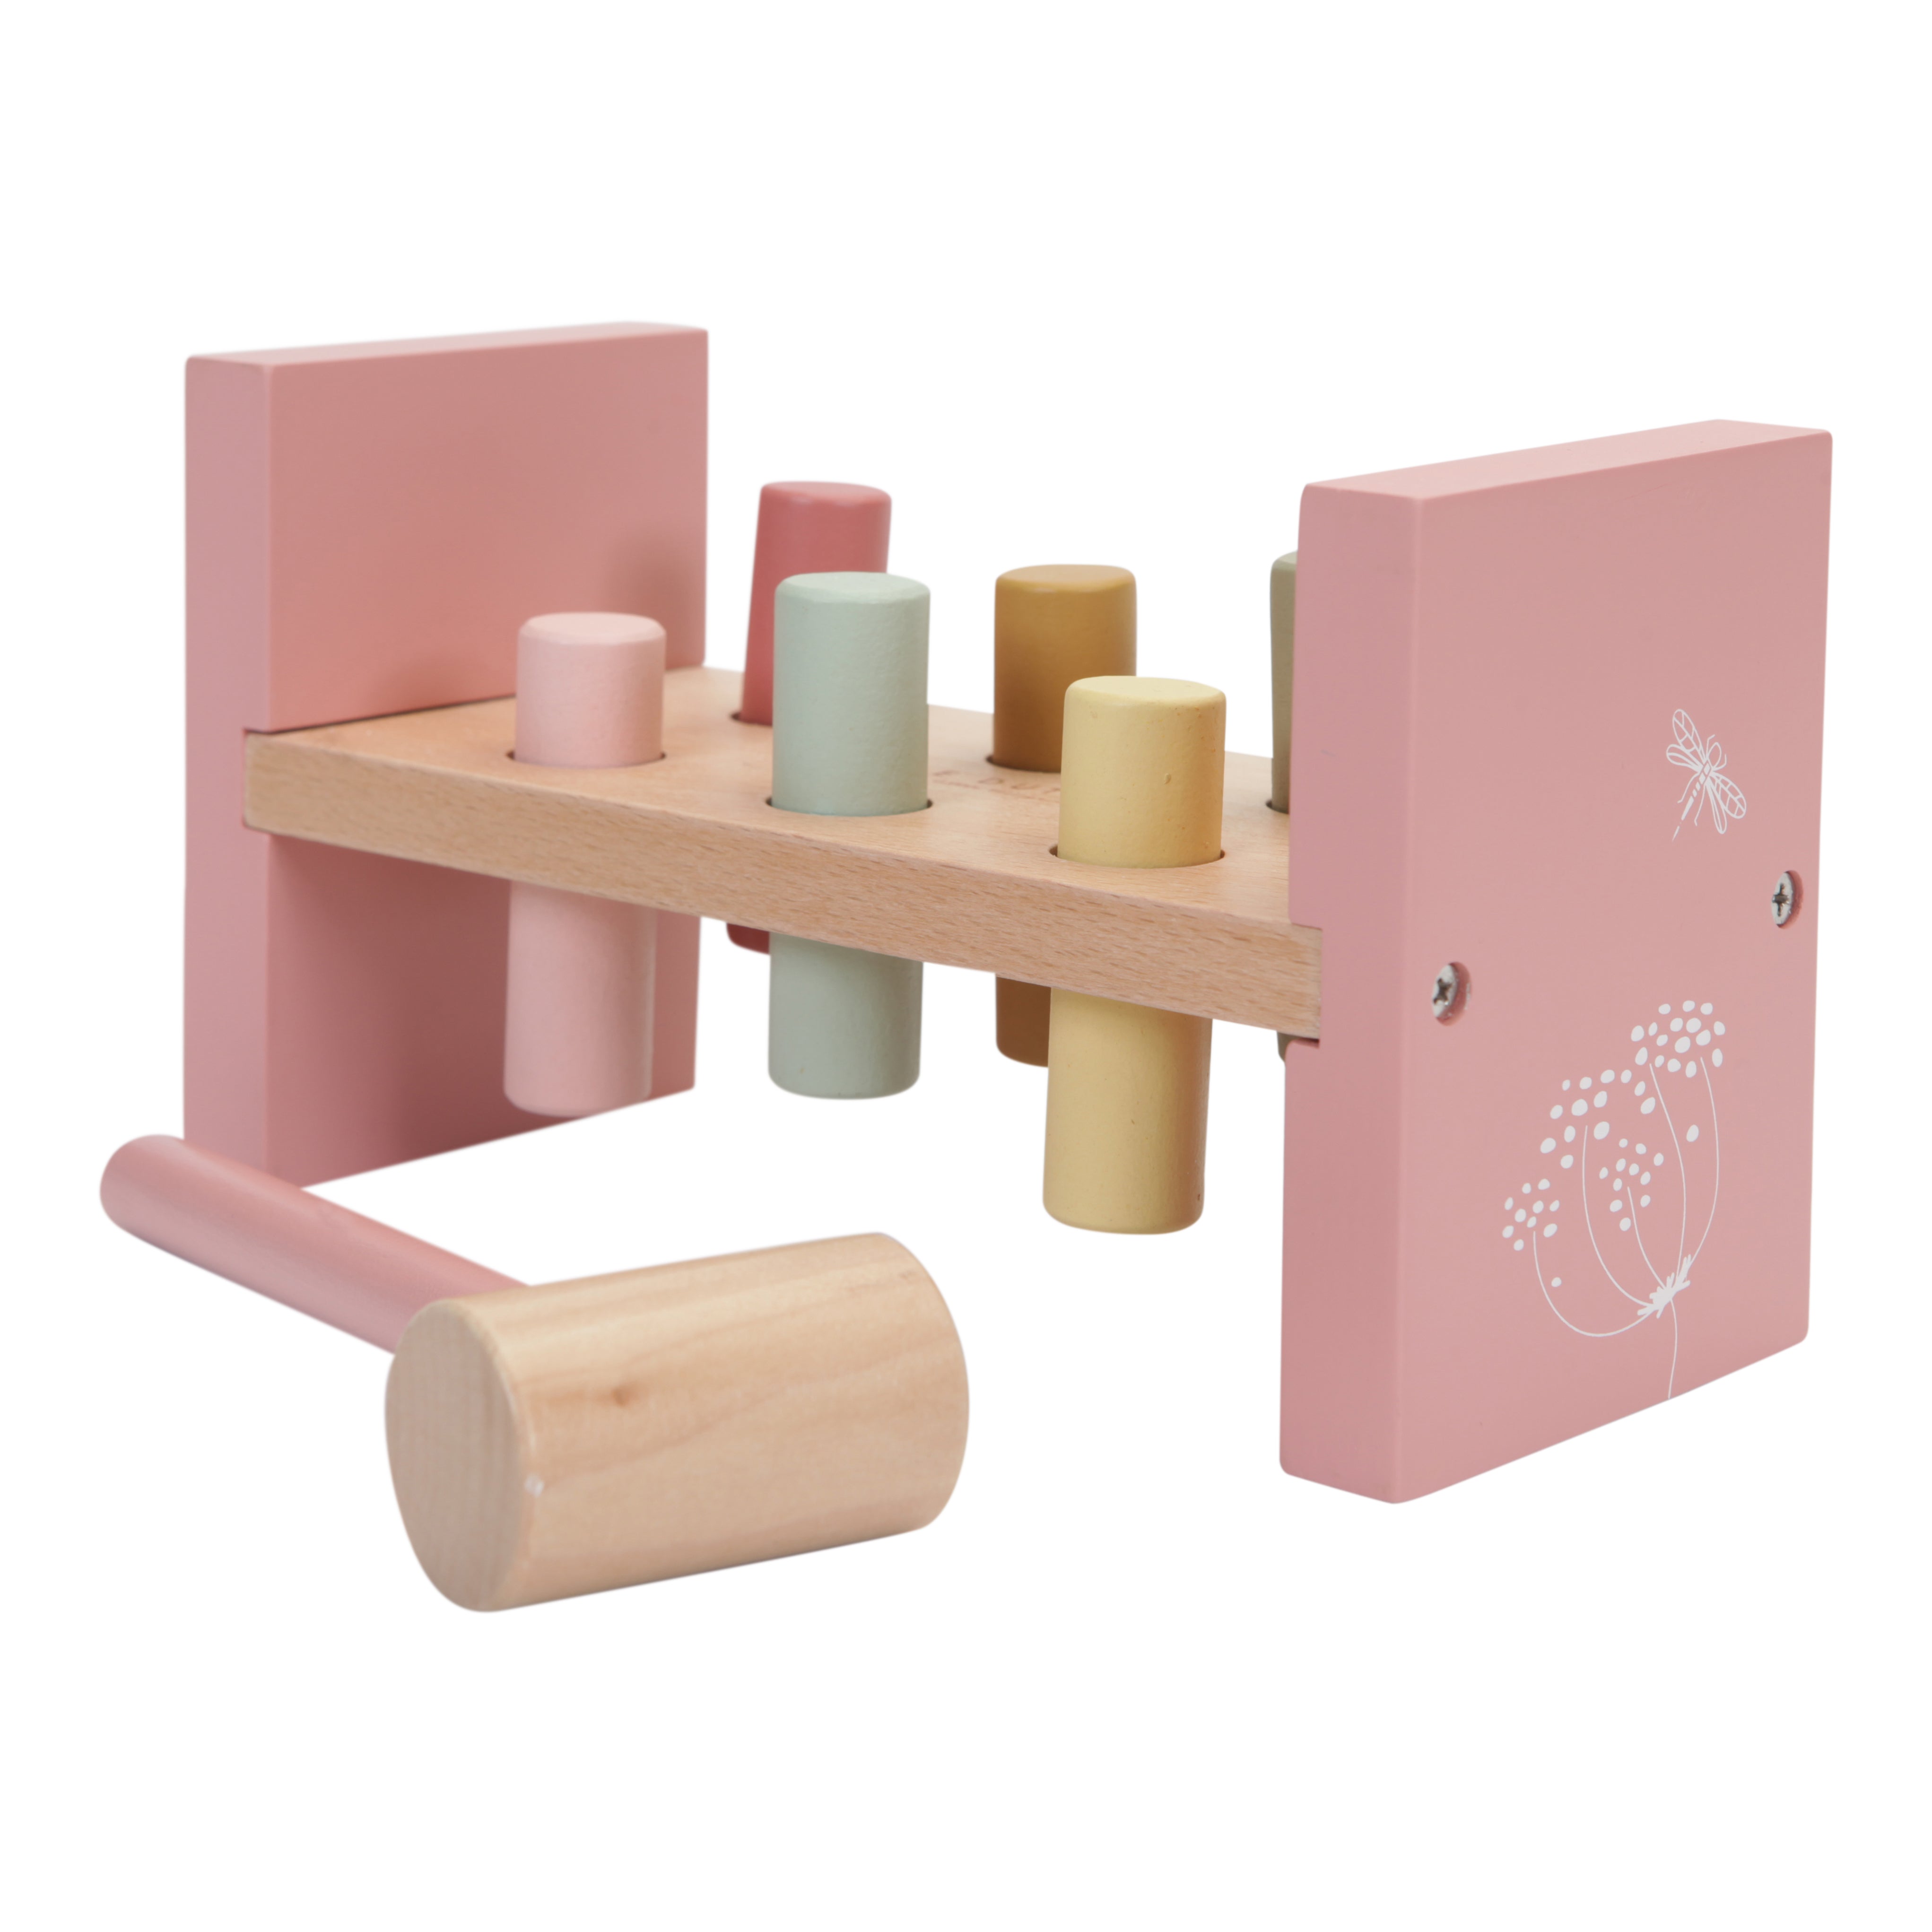 https://byggebo.com/cdn/shop/products/Little-Dutch-Hammer-Bench-Wooden-Toys-Little-Dutch-Pink-Flowers-11.jpg?v=1680787329